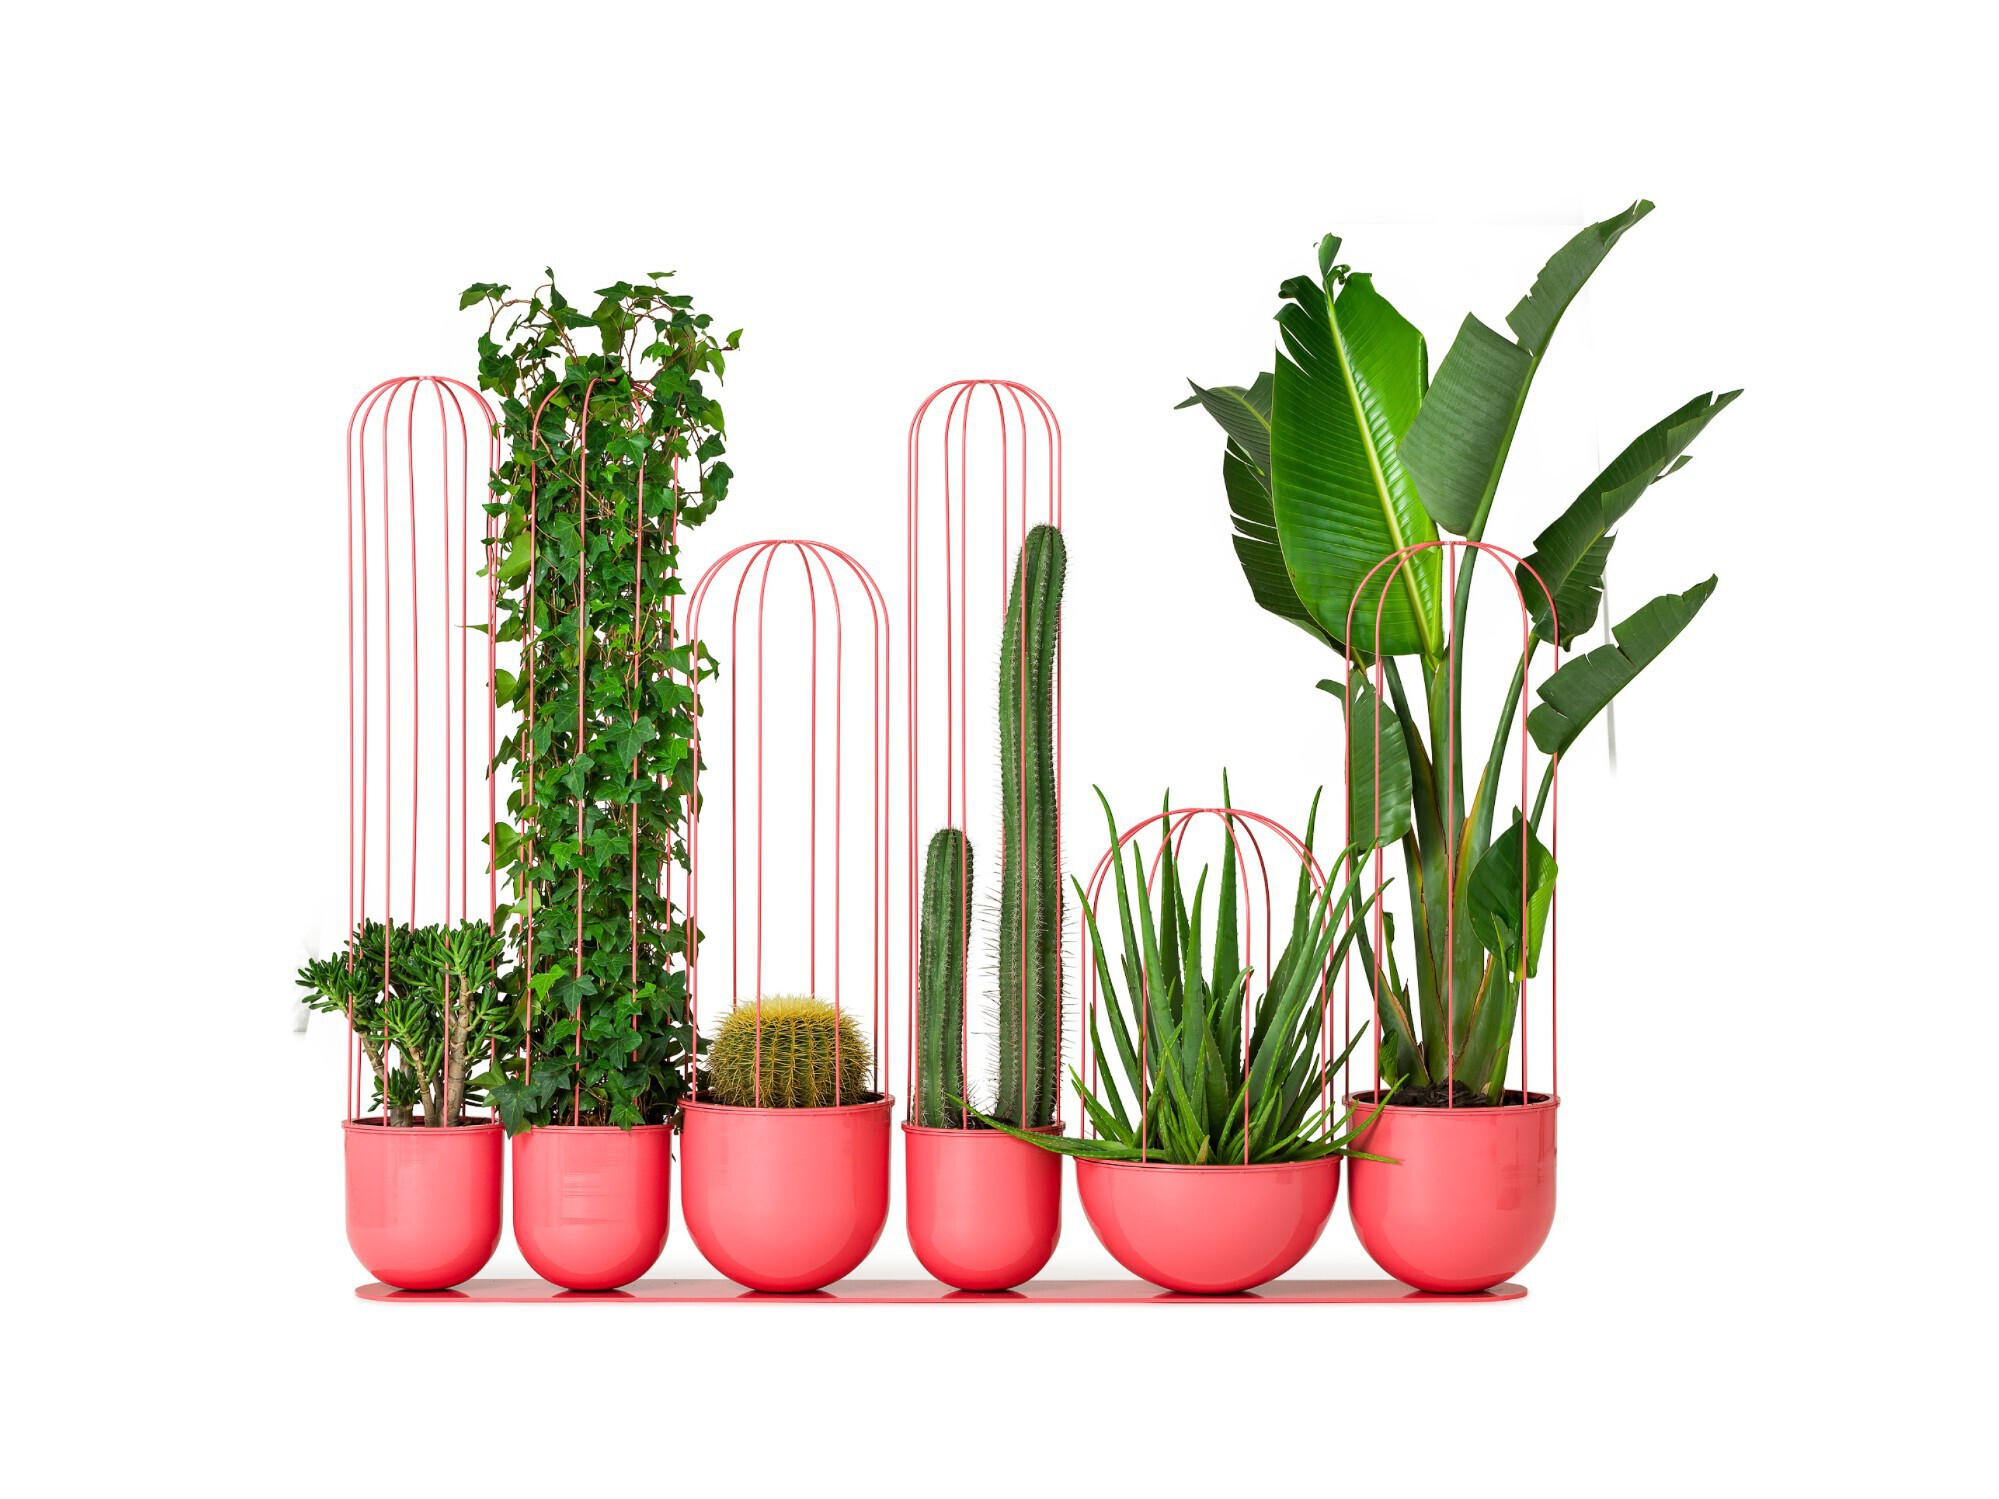 Cacti plantenbak - plantenbakgroep - 3 vormen - 3 formaten - roomdivider - ruimtebesparend - gemaakt van staal en aluminium - 4 kleuren - openbare ruimte - winkelcentra - musea - wachtruimte - ontvangsthal - appartementencomplex